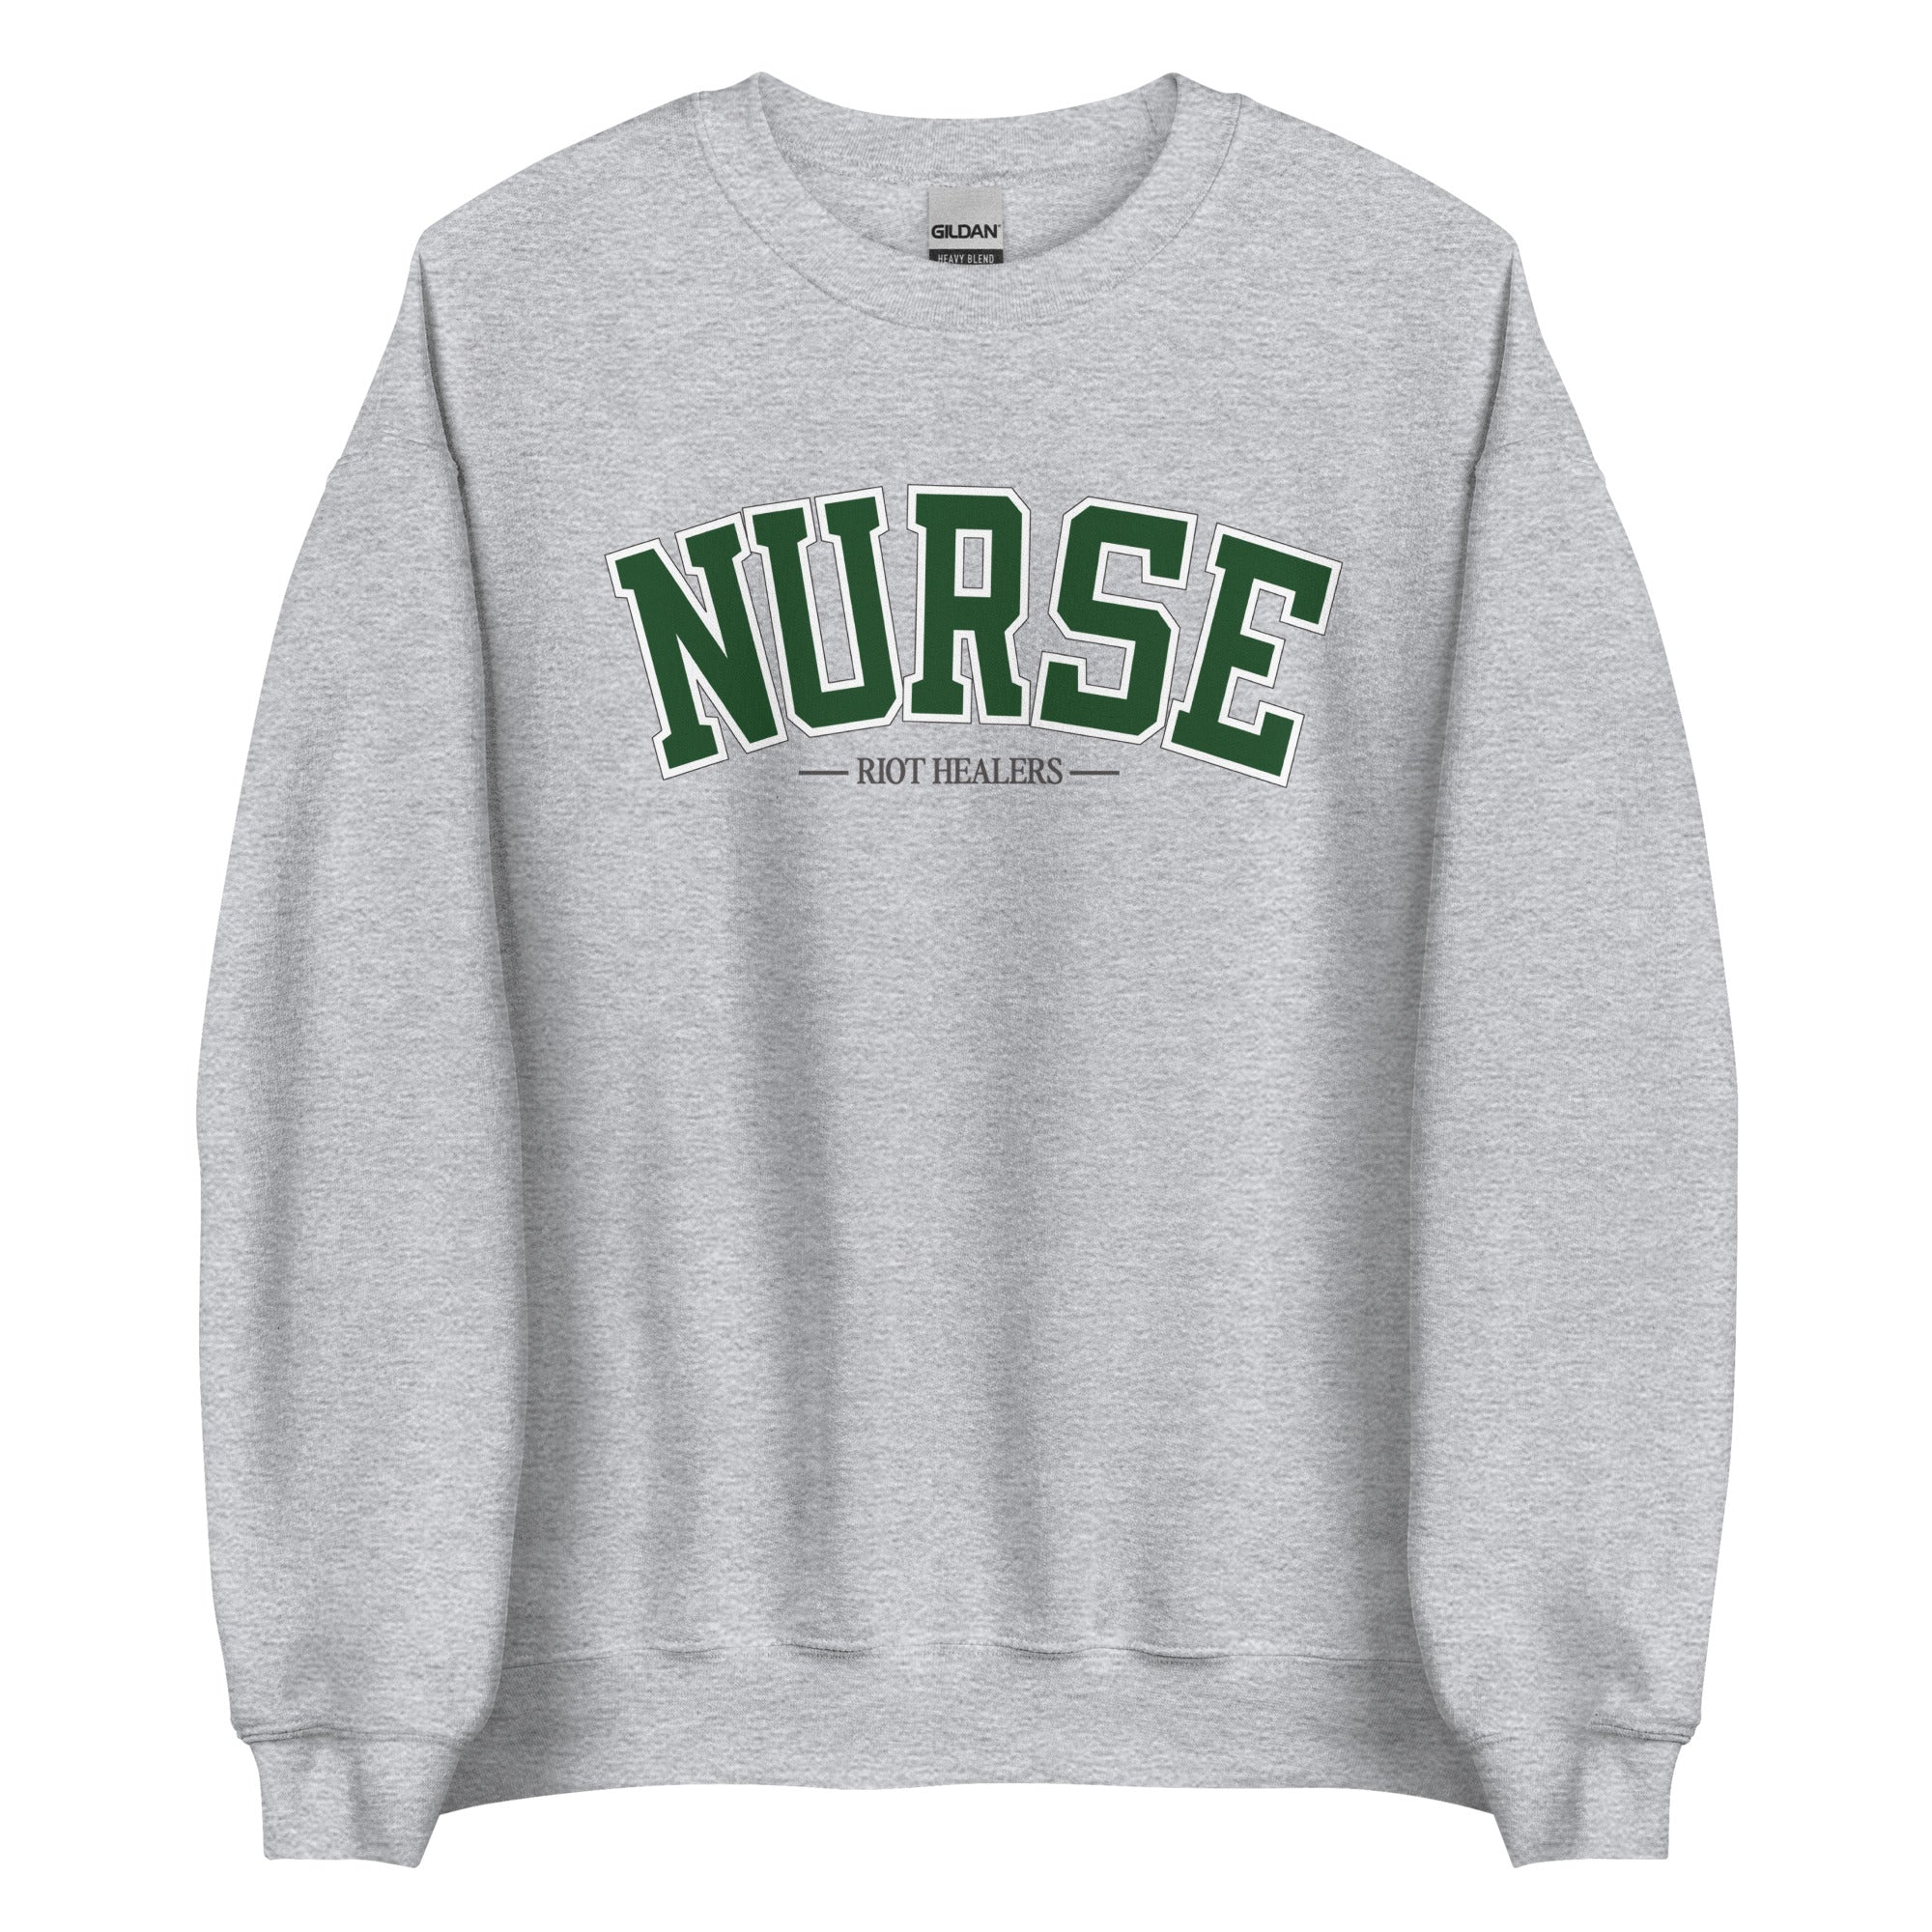 Nurse Collegiate Crewneck - Grey & Green